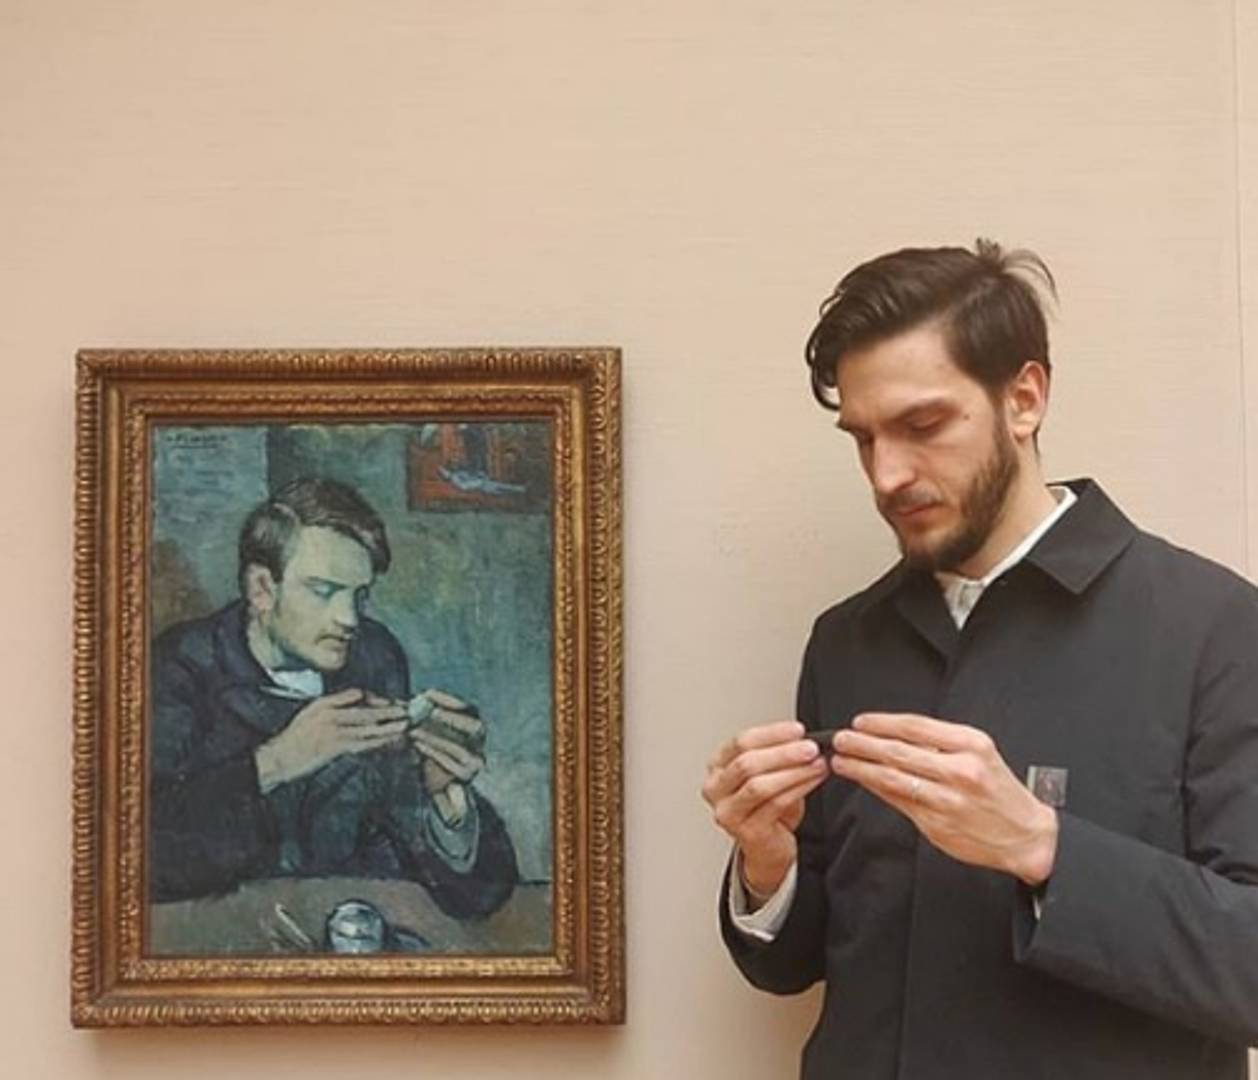 Muškarac koji stoji iz Instagram profila Mattao otkrio je da sliči s likom s Picassovog djela, u jednom muzeju u Švicarskoj.
